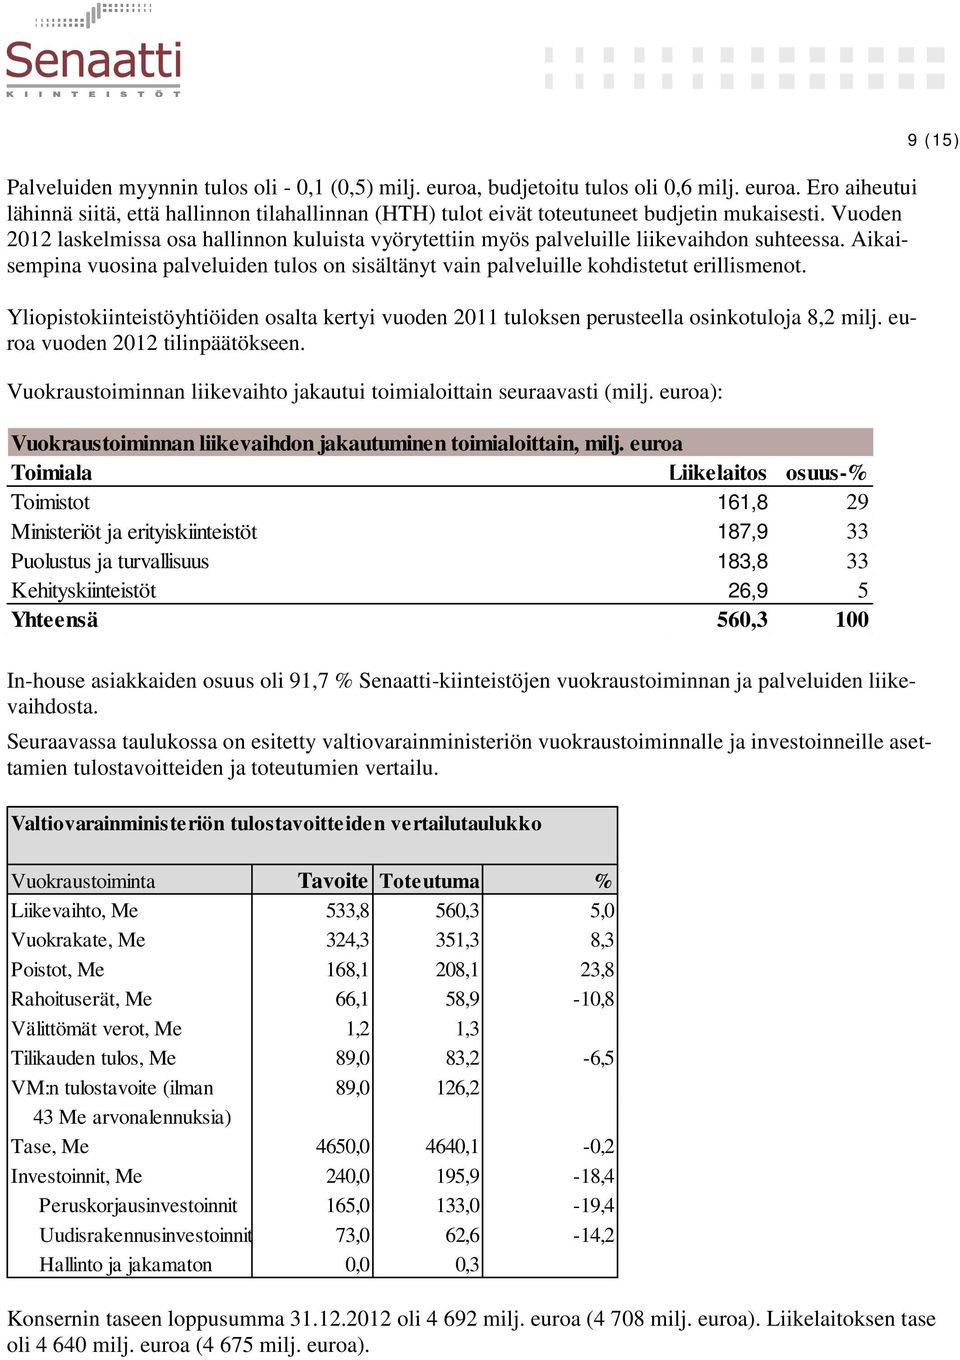 Yliopistokiinteistöyhtiöiden osalta kertyi vuoden 2011 tuloksen perusteella osinkotuloja 8,2 milj. euroa vuoden 2012 tilinpäätökseen.